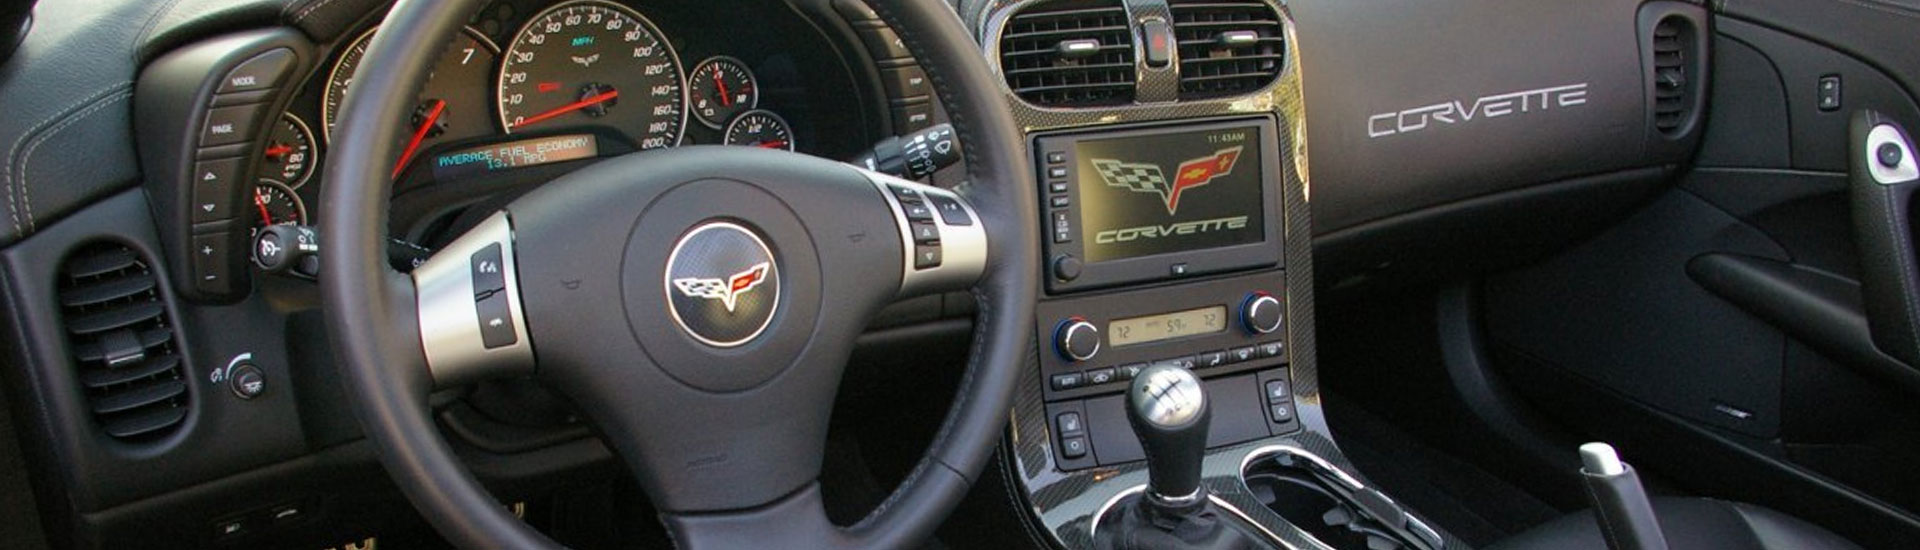 2010 Chevrolet Corvette Dash Kits